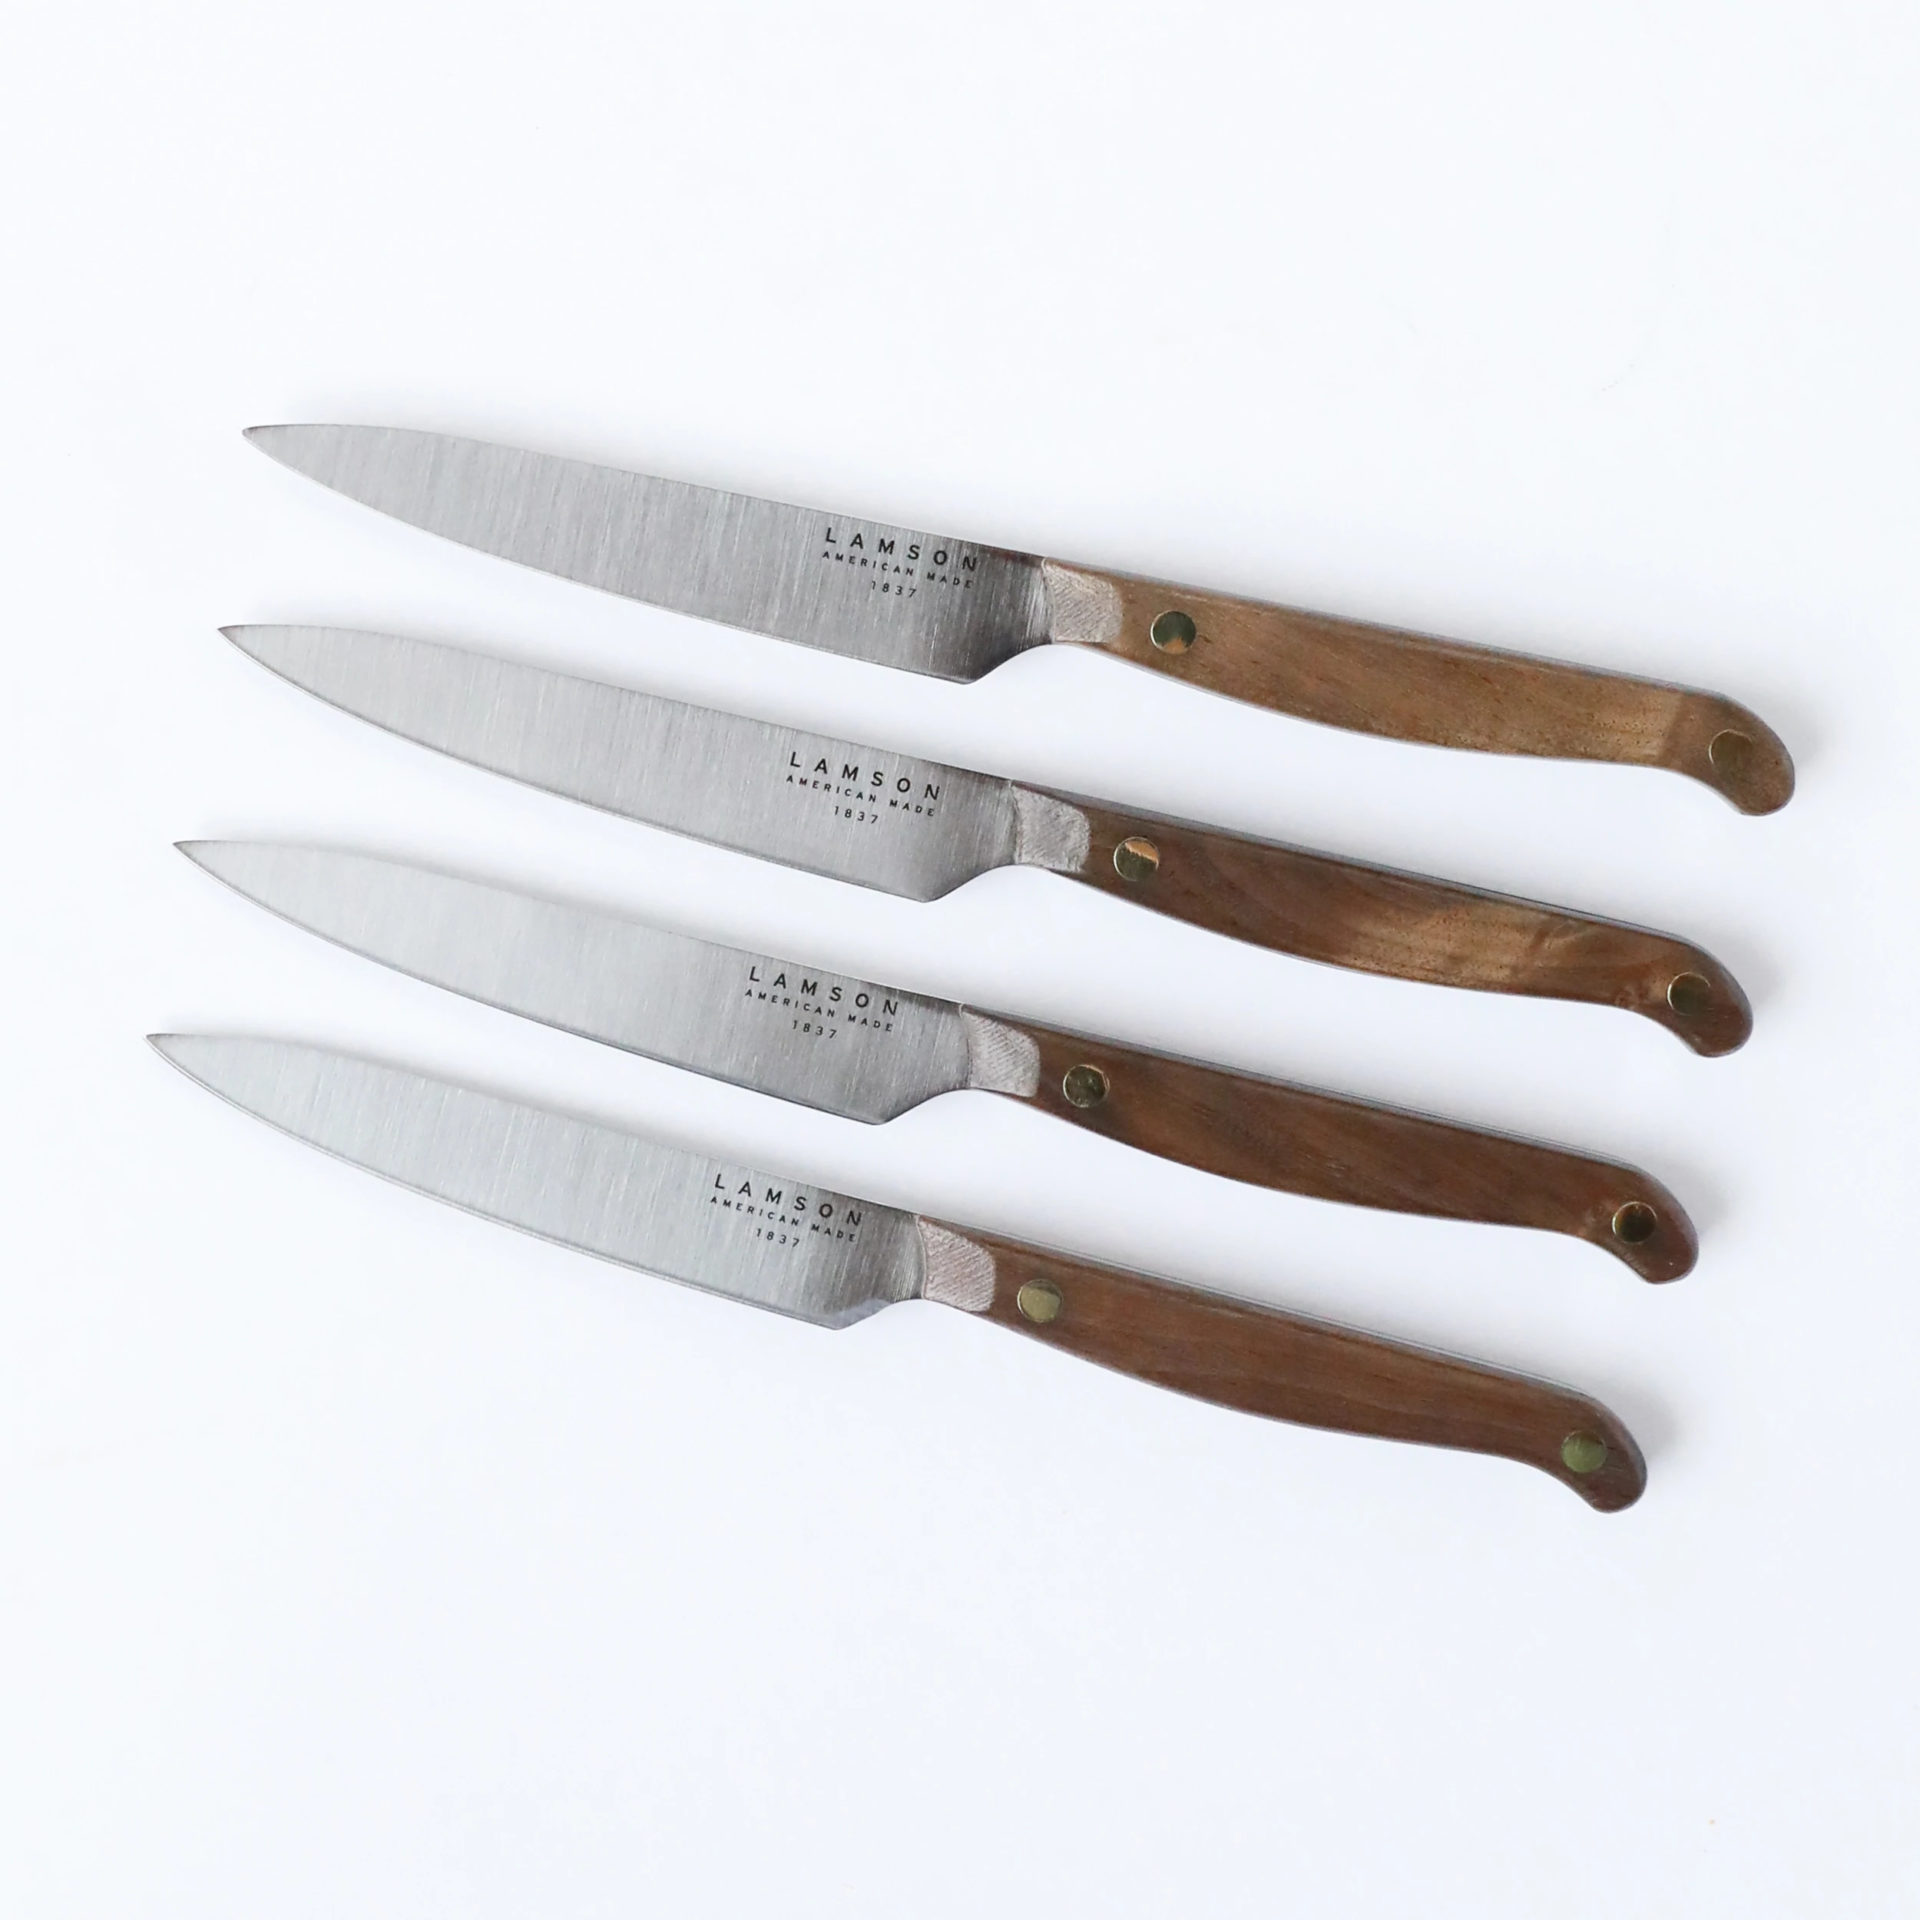 6 Deejo Steak Knives, Ebony Wood / Japanese